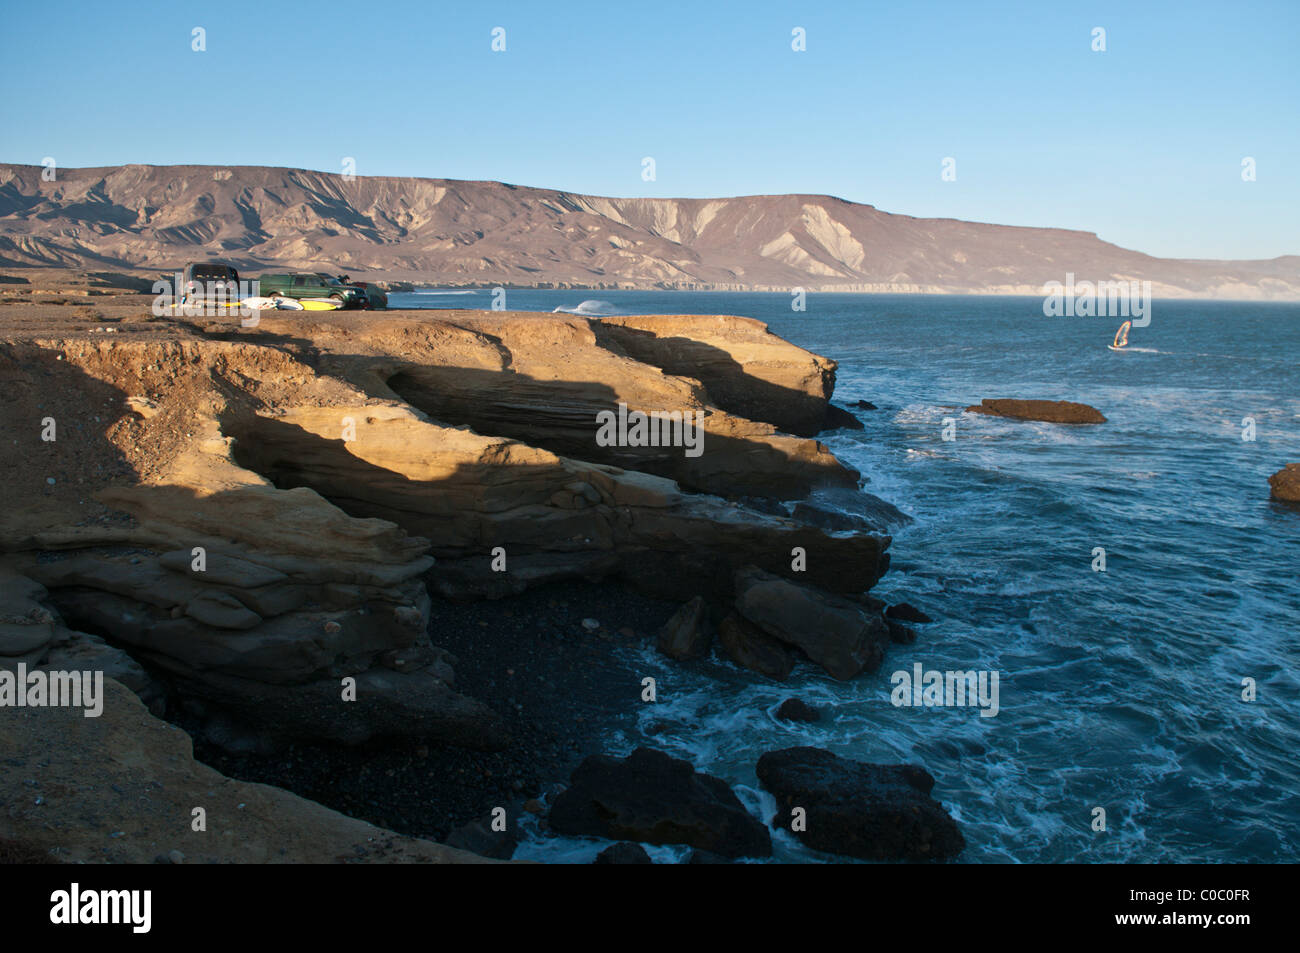 Camping along the shoreline at Punto San Carlos, Baja California Norte, Mexico Stock Photo